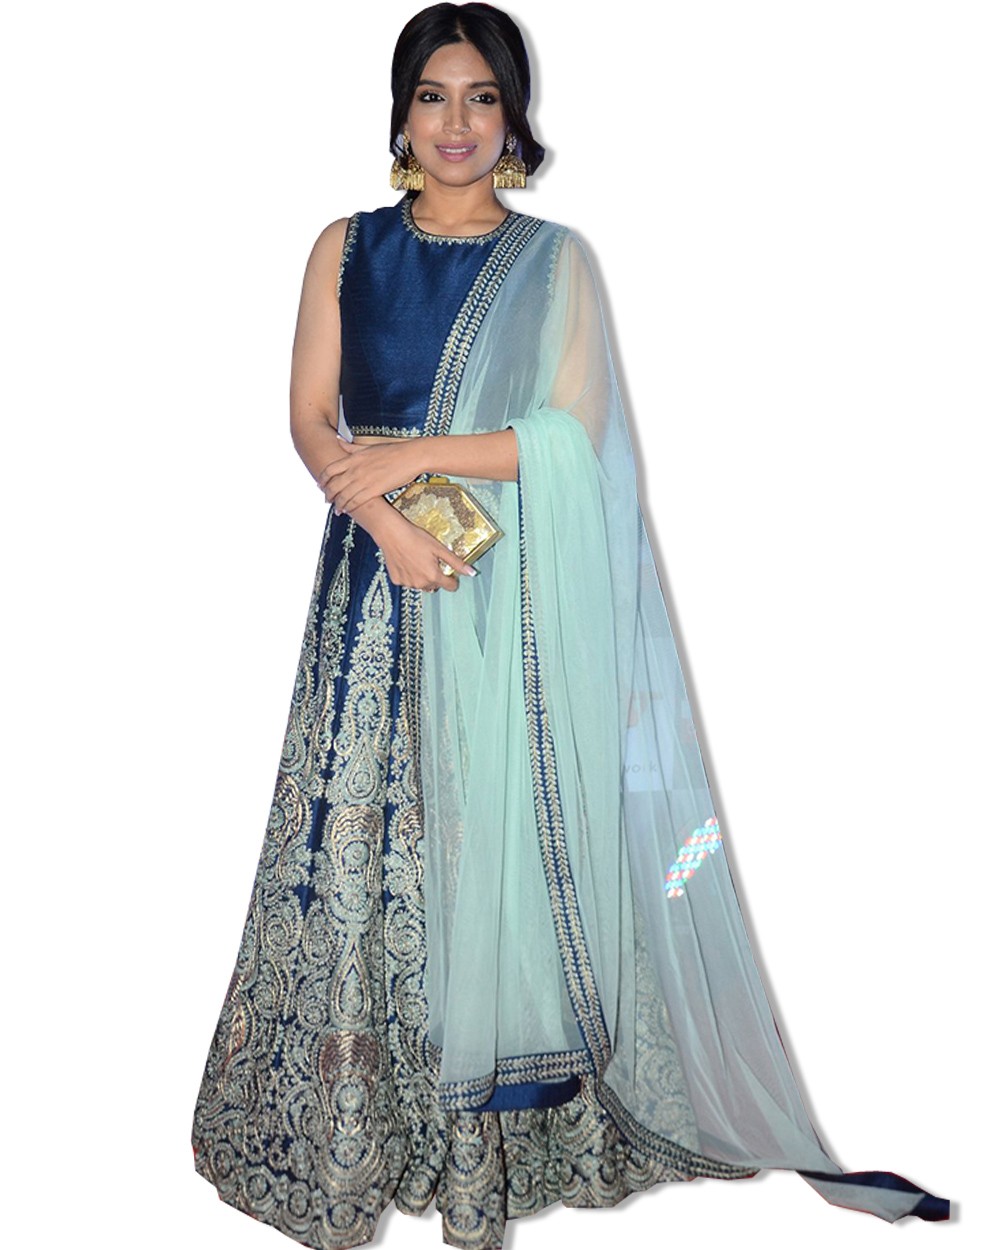 Bhumi Pednekar Floor Length Dress Buy Floor Length Dress for best price ...